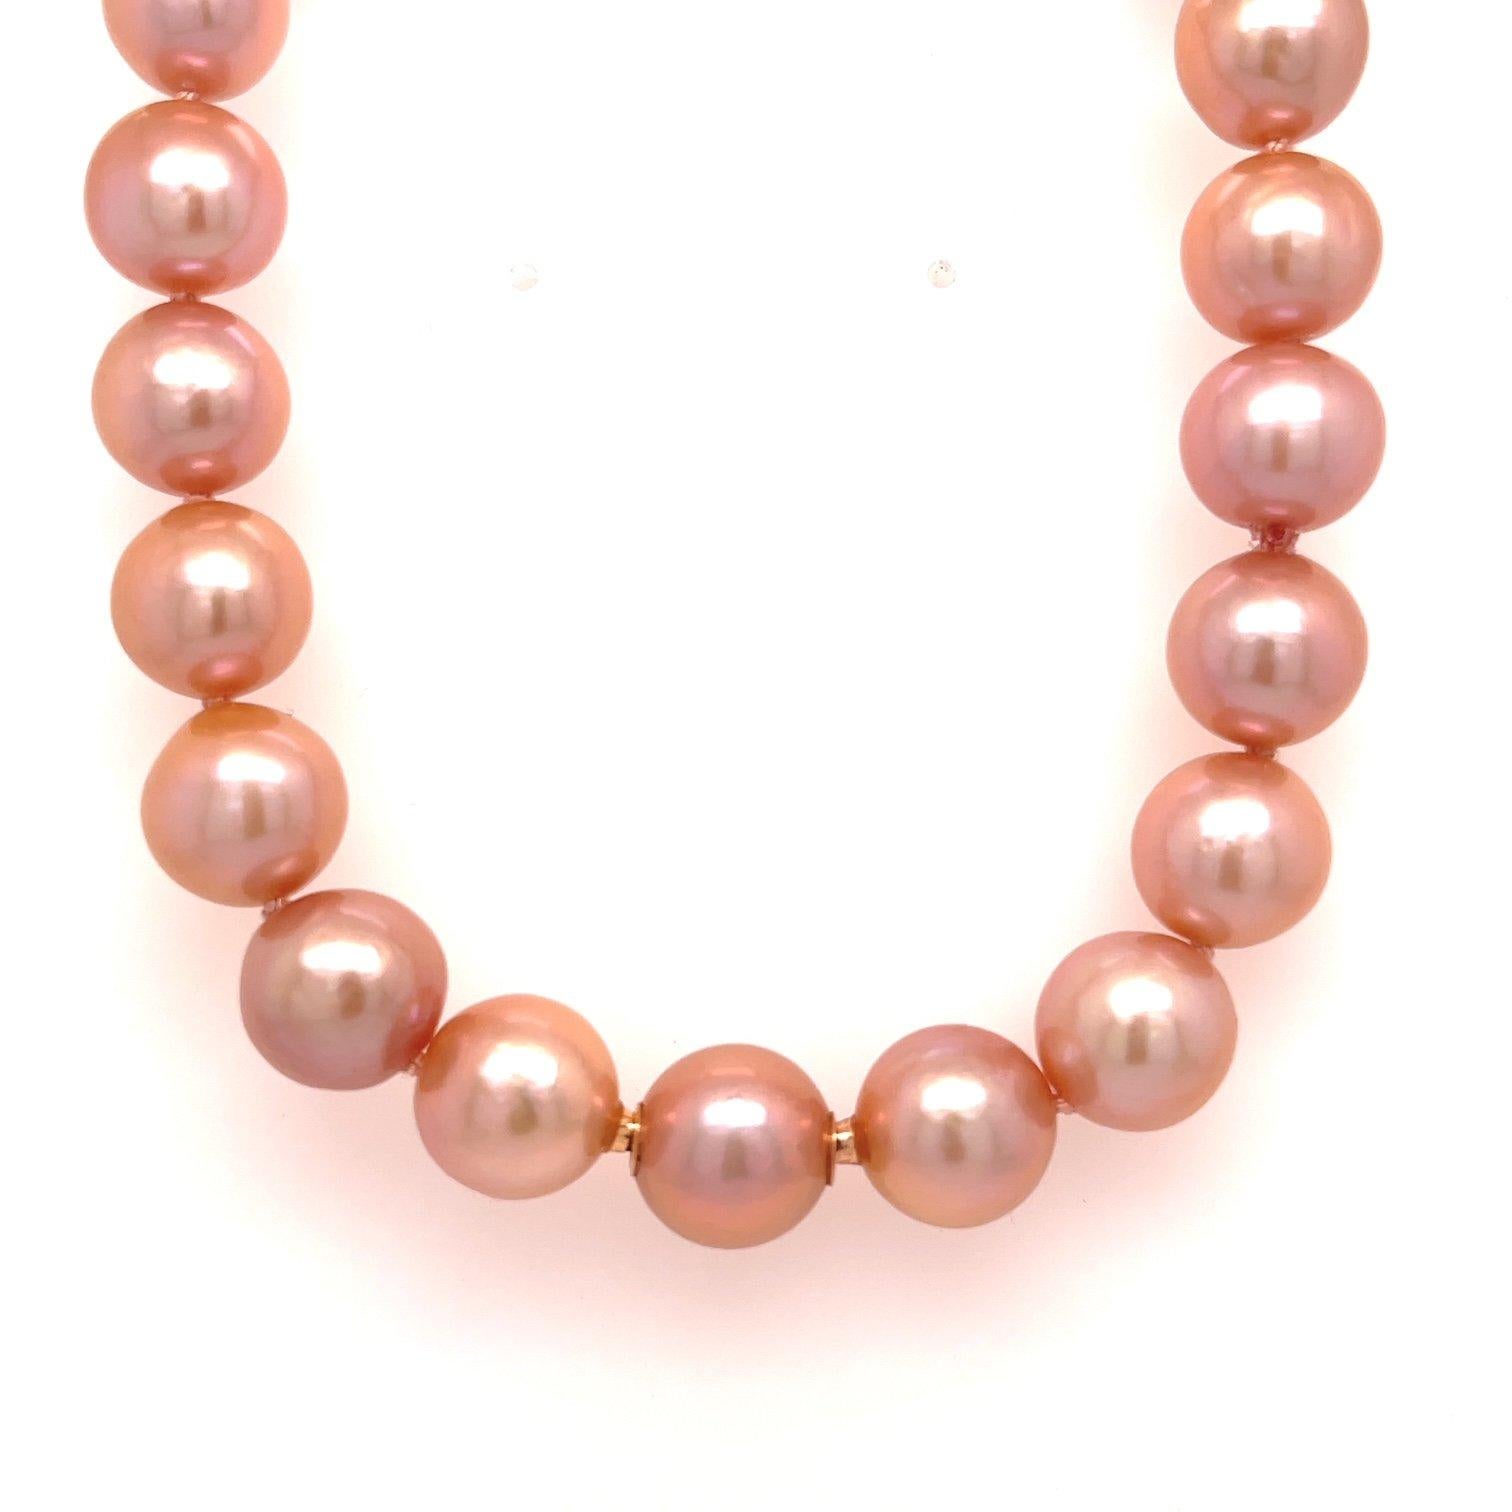 Un collier de perles d'eau douce de couleur pêche, 10mm-11mm, cultivées dans le Yangtze en Chine, avec des parties modulables en or rose 18k.  Et un fermoir en forme de cœur en druzy brun et blanc en or rose 18k serti d'un diamant poire de taille